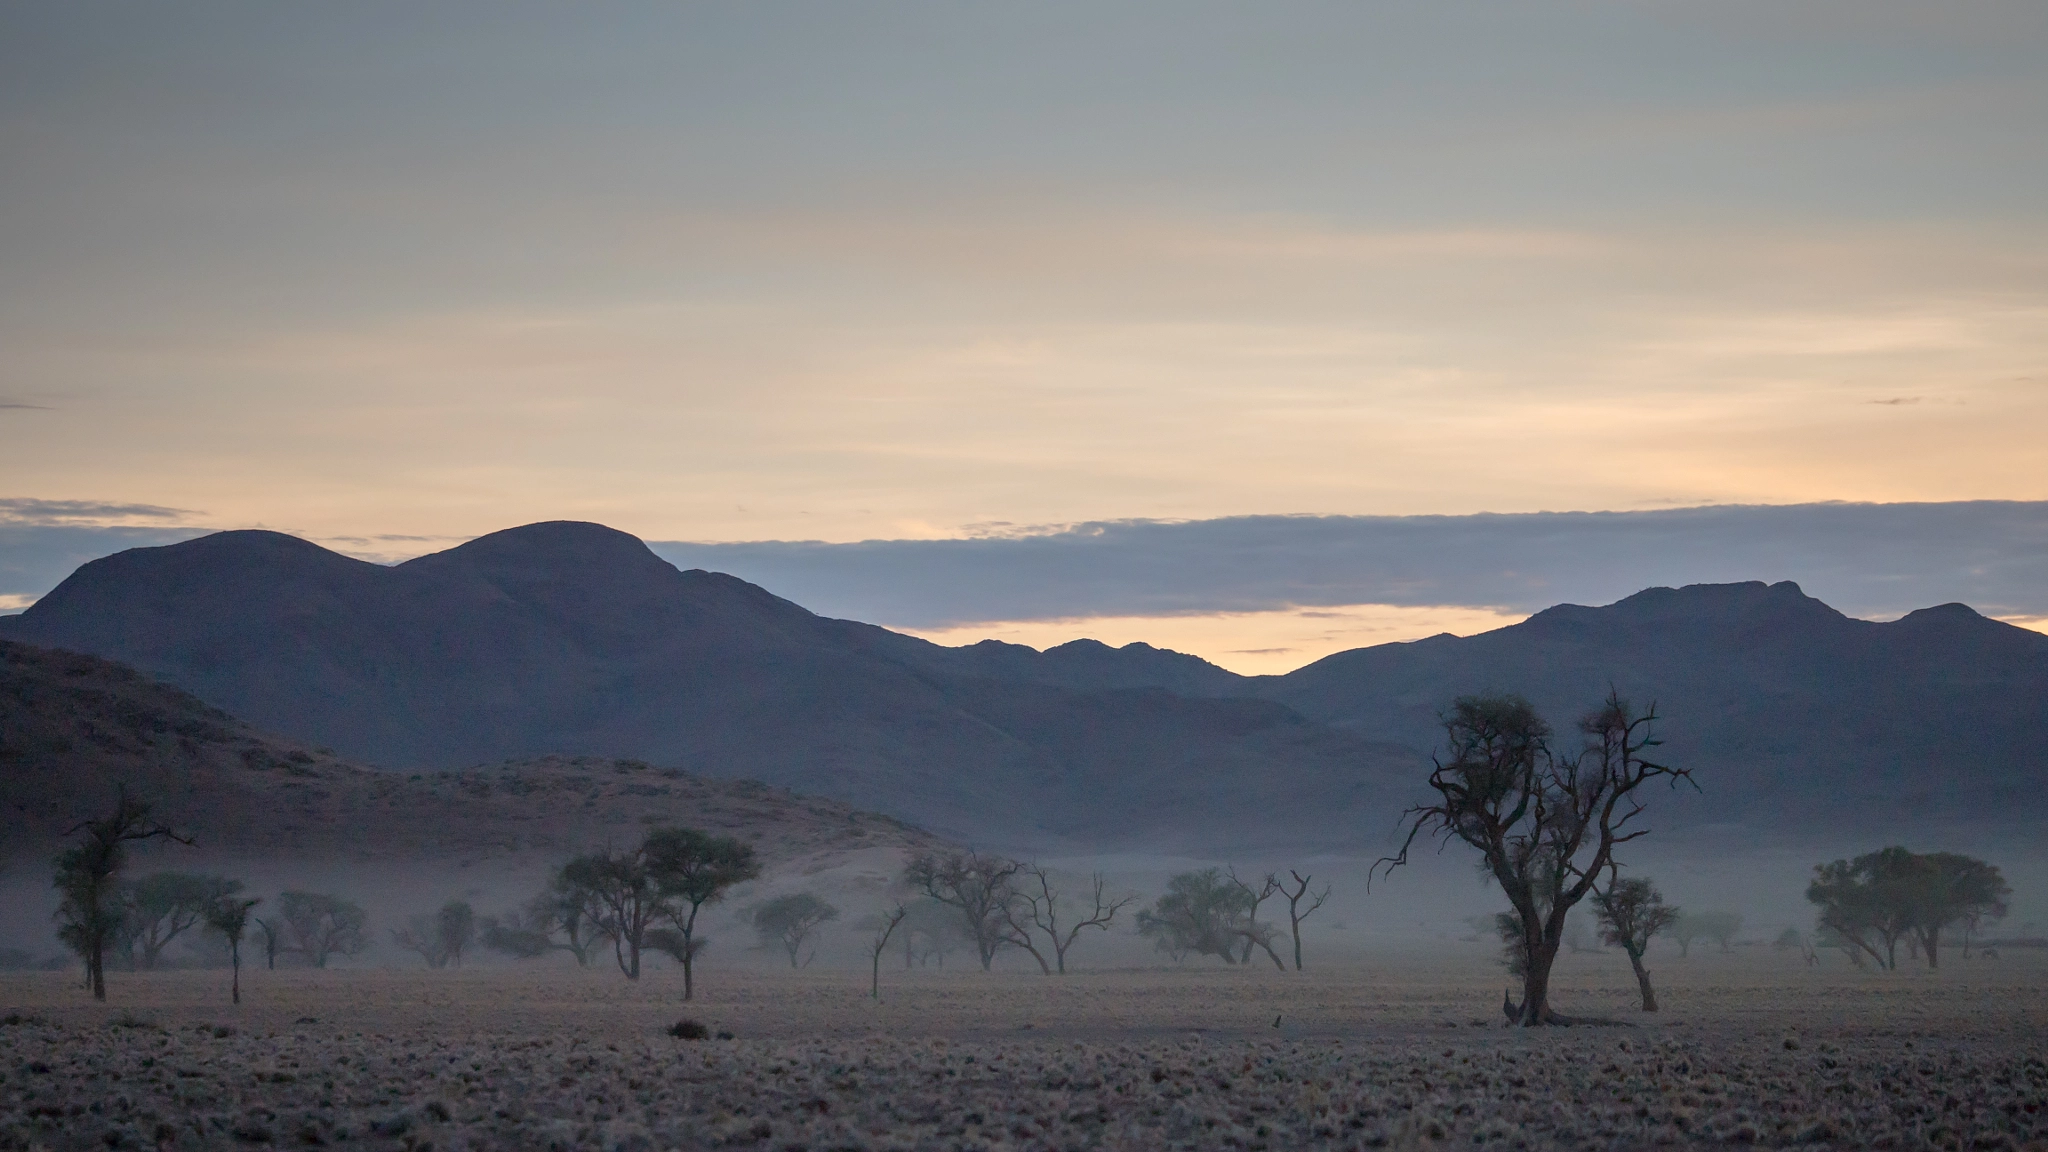 Panasonic Lumix DMC-GH4 sample photo. Namibia sunrise photography